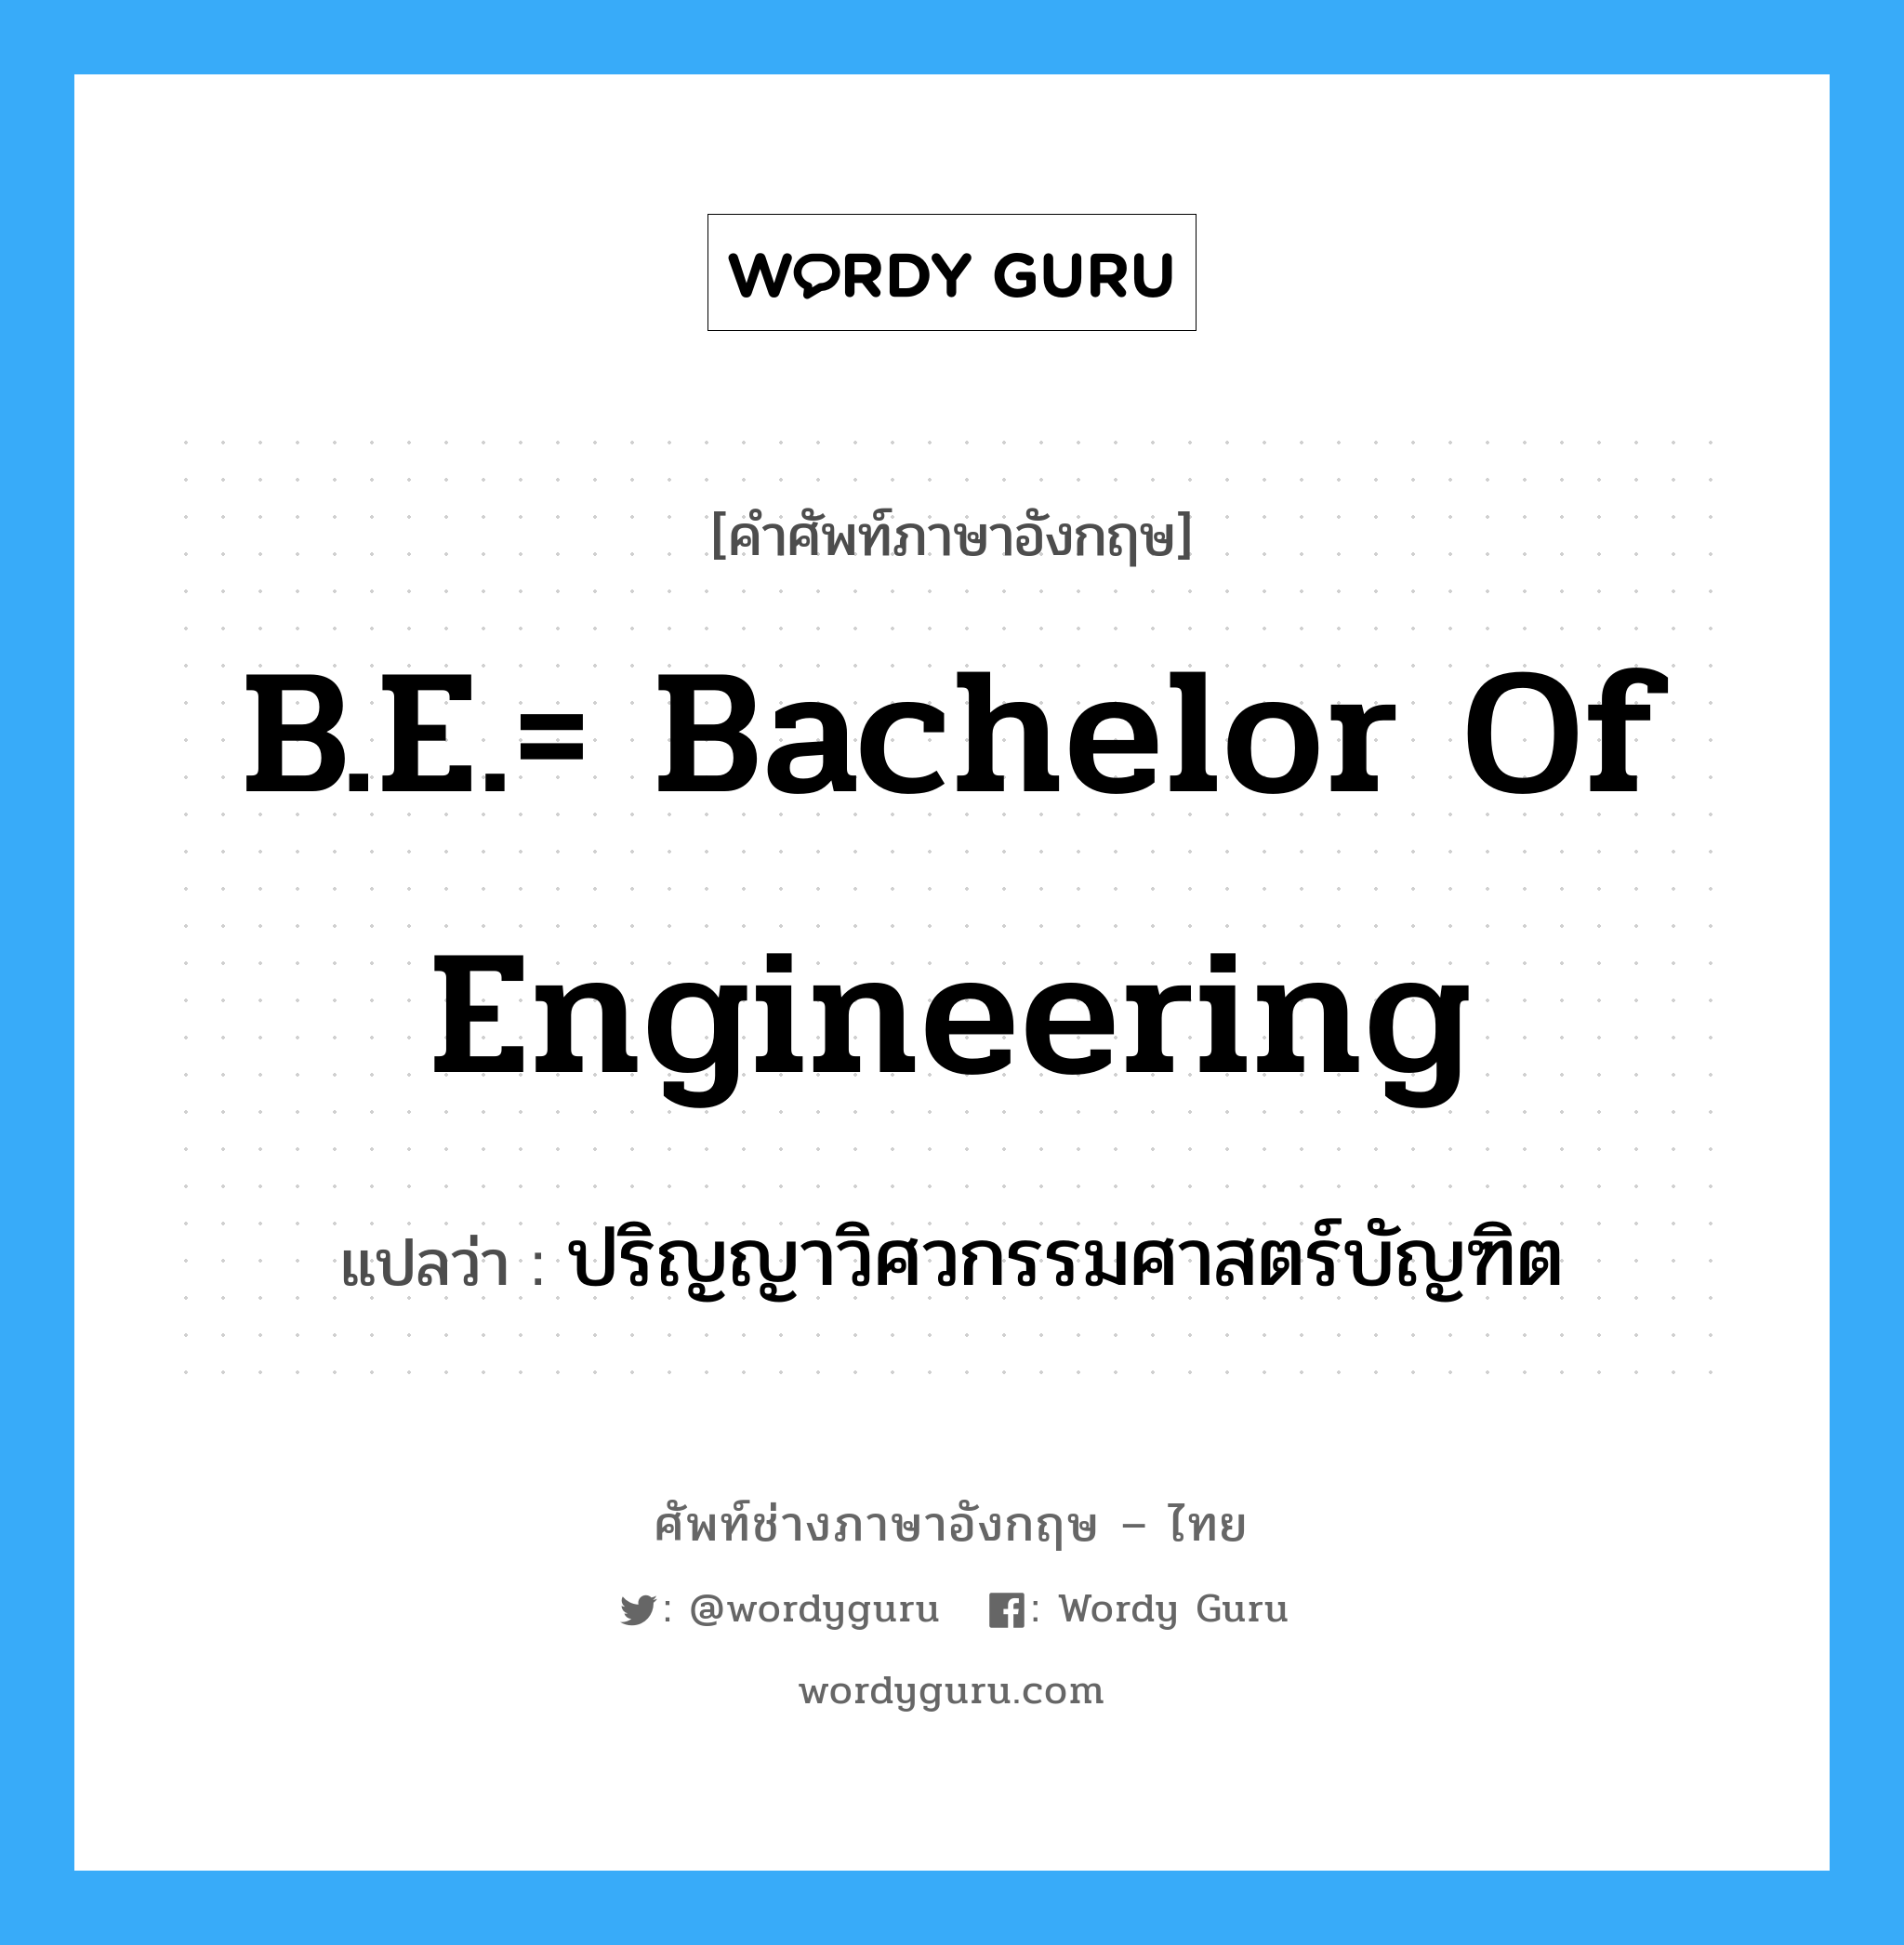 ปริญญาวิศวกรรมศาสตร์บัญฑิต ภาษาอังกฤษ?, คำศัพท์ช่างภาษาอังกฤษ - ไทย ปริญญาวิศวกรรมศาสตร์บัญฑิต คำศัพท์ภาษาอังกฤษ ปริญญาวิศวกรรมศาสตร์บัญฑิต แปลว่า B.E.= Bachelor of Engineering